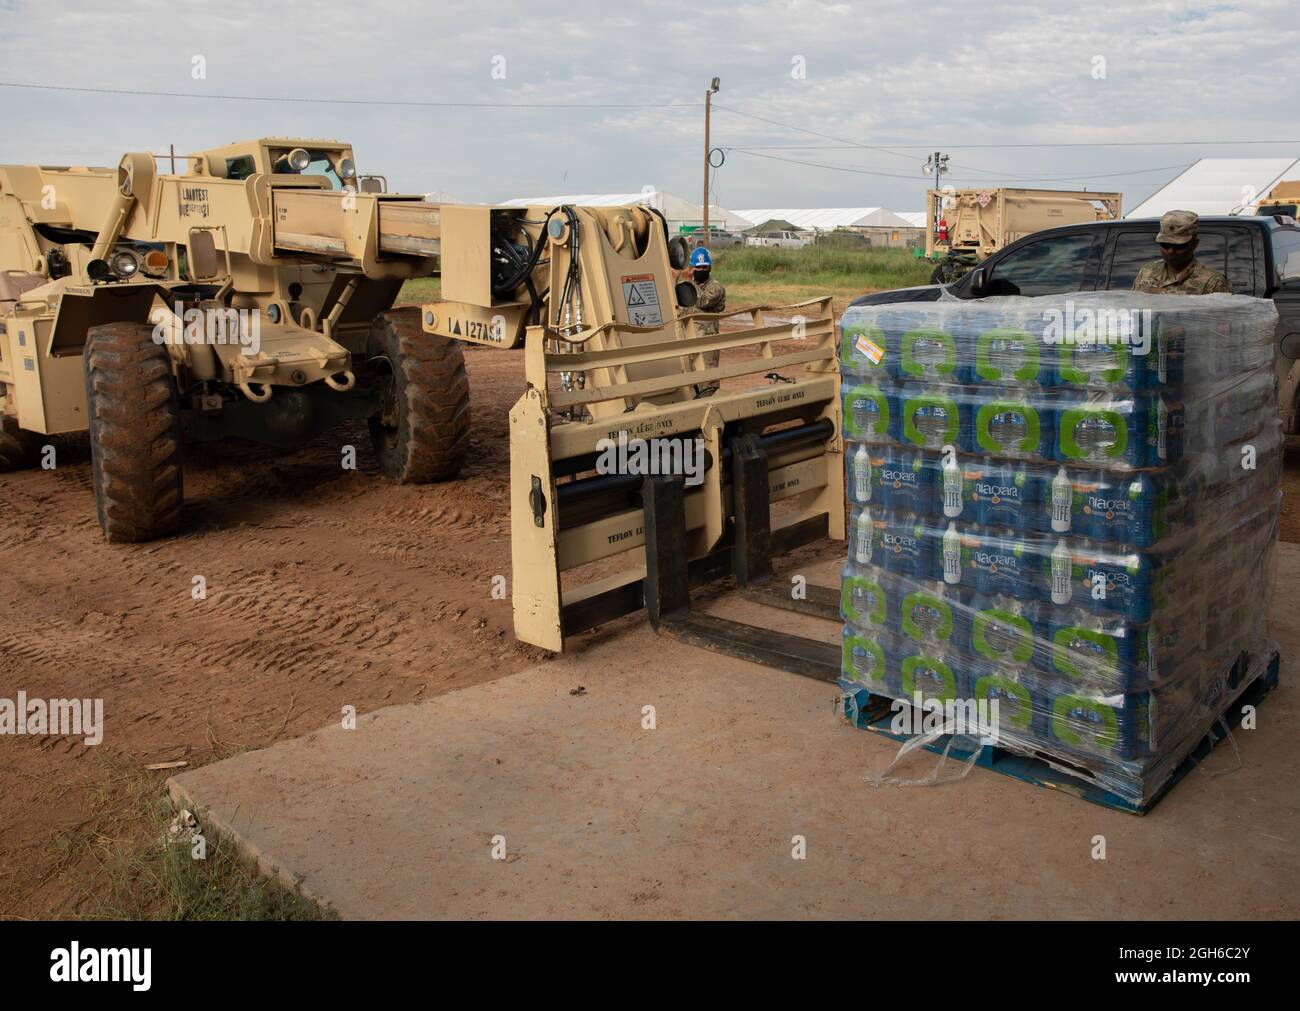 Kraftfahrzeugbetreiber, die dem 1. Bataillon, dem 6. Infanterie-Regiment, dem 2. Brigade-Kampfteam, der 1. Panzerdivision, zugewiesen sind, betreiben einen Gabelstapler, um eine Palette Wasser am Doña Ana-Komplex von Fort Bliss in New Mexico, 4. September 2021, zu liefern. Die Einheit ist mit der Lieferung von Wasser für afghanische Evakuierte an mehreren Stellen beauftragt. Das Verteidigungsministerium stellt über das US-Nordkommando und zur Unterstützung des Heimatschutzministeriums Transport, vorübergehende Unterbringung, medizinische Vorsorgeuntersuchungen und allgemeine Unterstützung für mindestens 50,000 afghanische Evakuierte in geeigneten Einrichtungen, in permanenten oder temporären s bereit Stockfoto